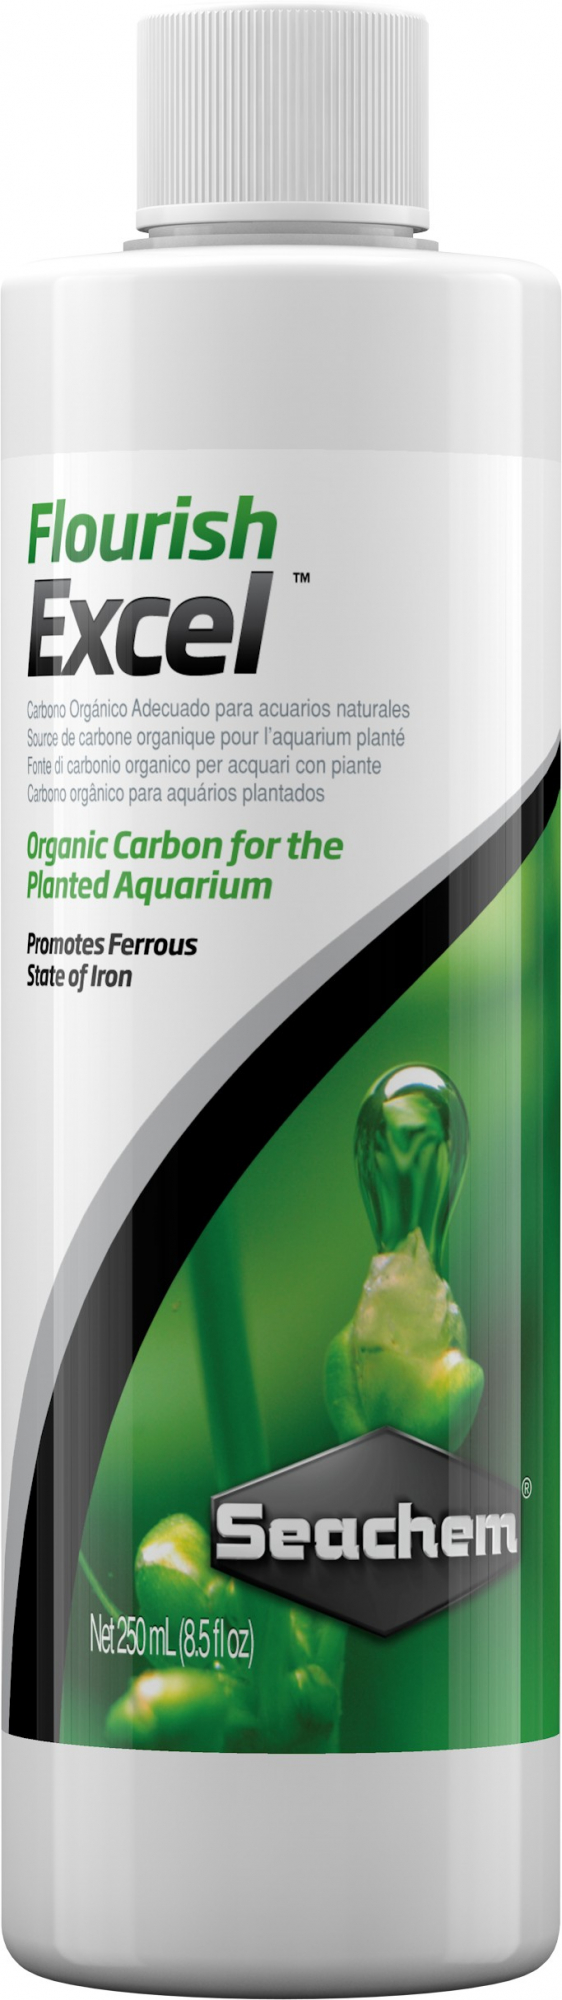 Seachem Flourish Excel Flüssigkohle für Aquarienpflanzen